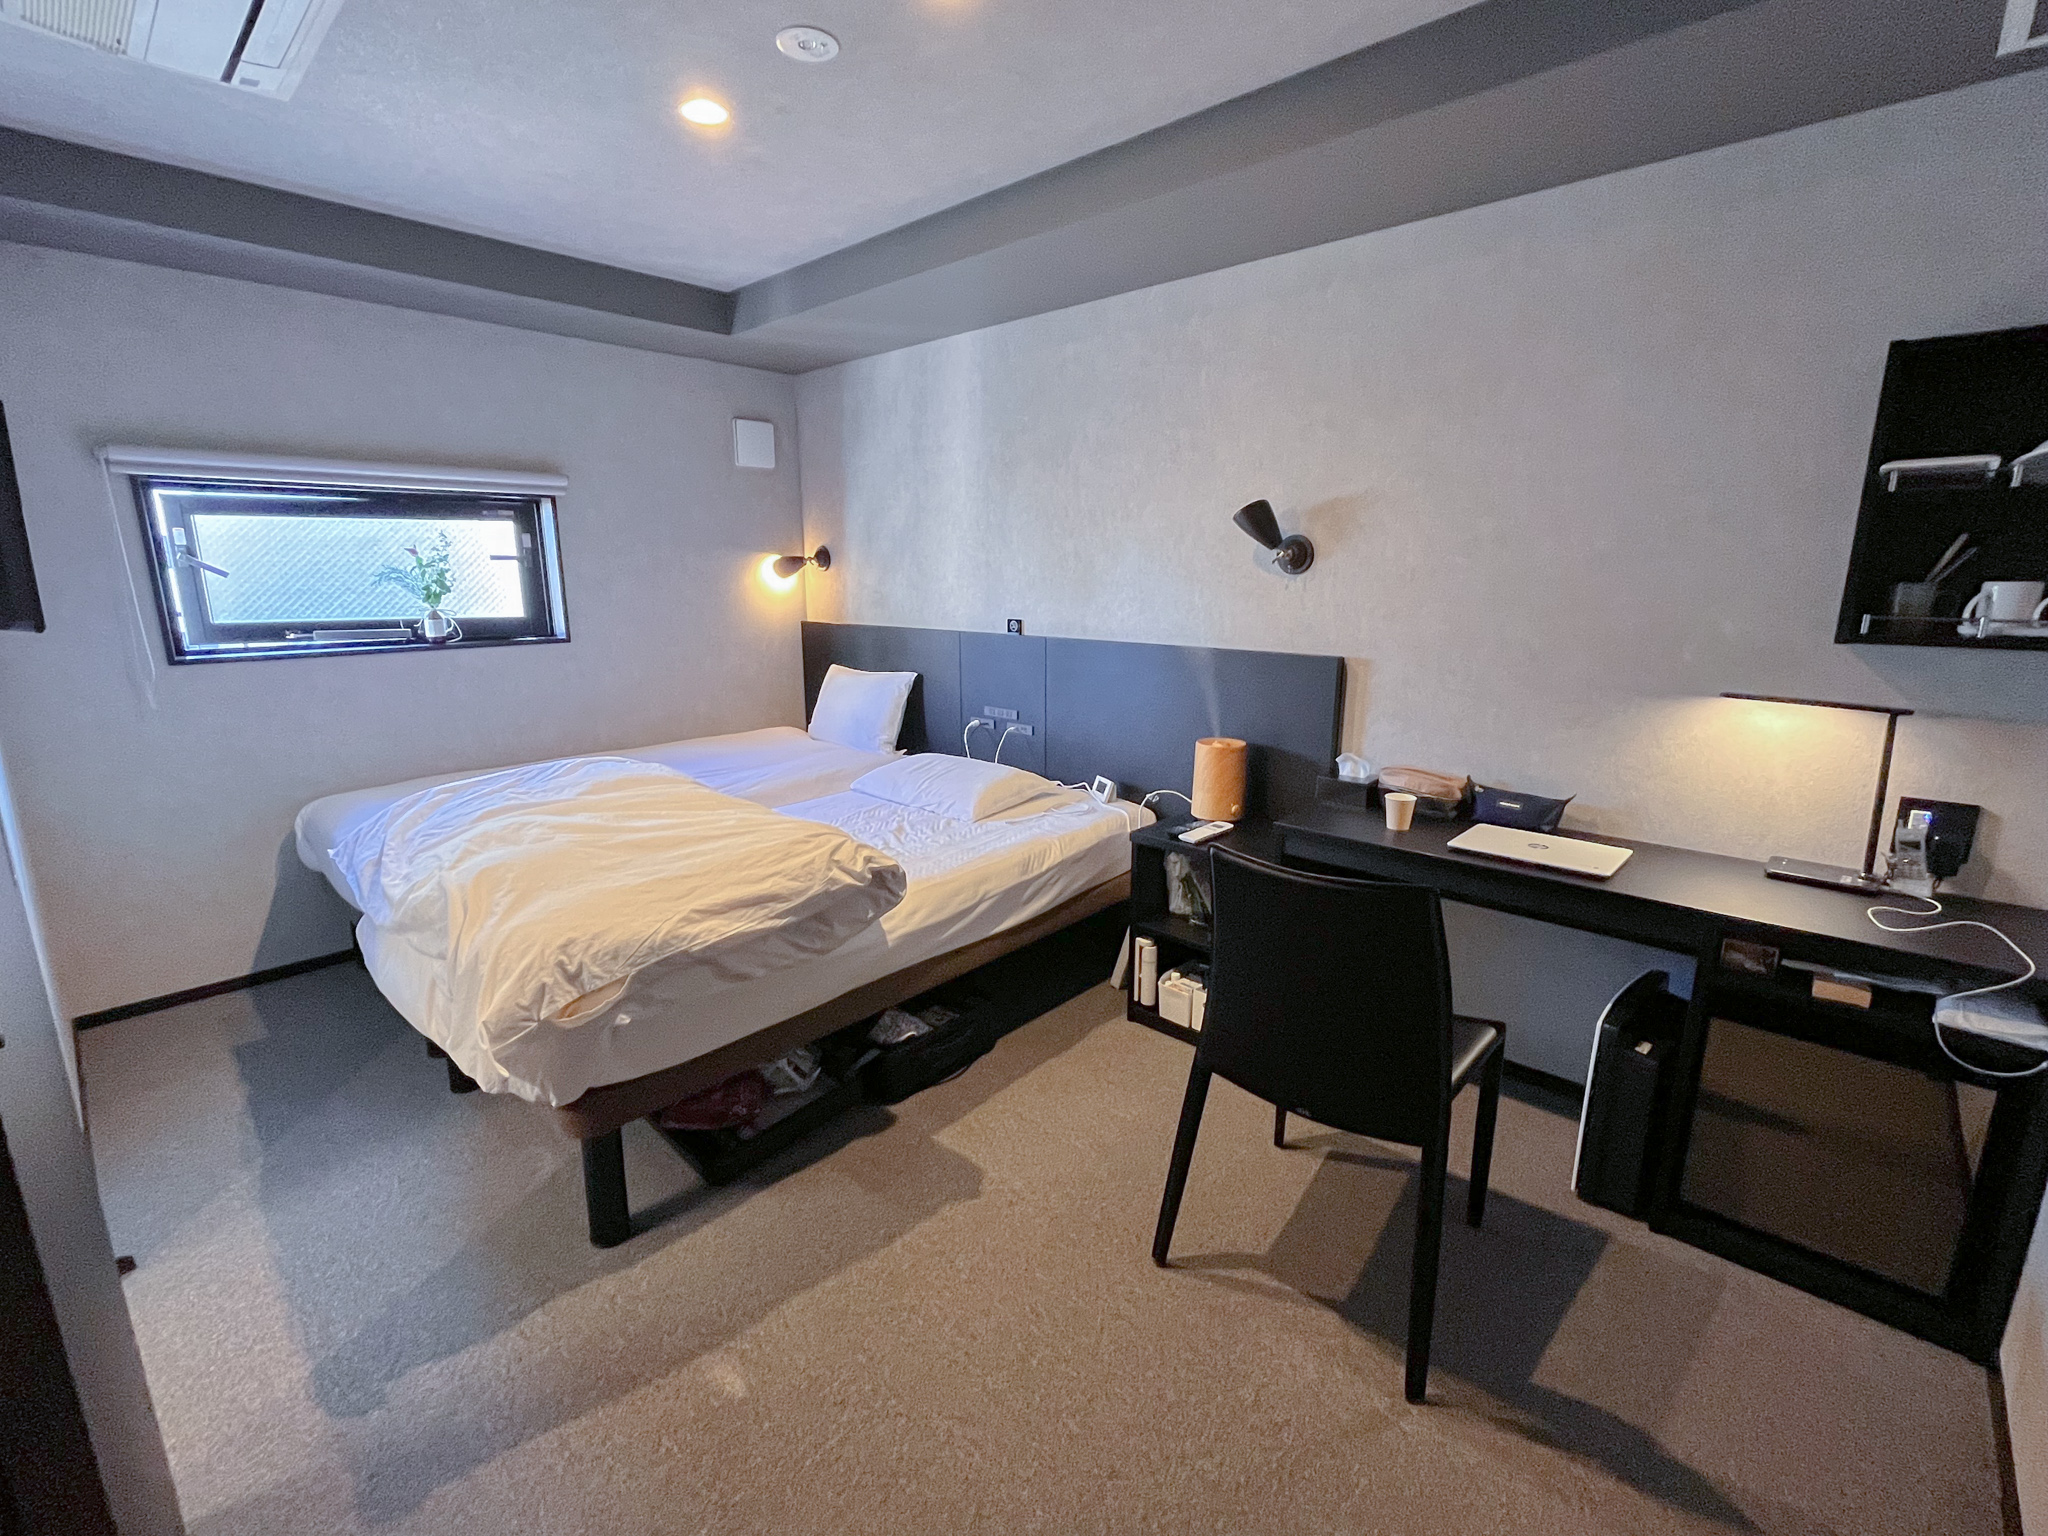 HOTEL TABARD TOKYOの室内。ベッド下に十分な広さがあり、トランクを広げたまま収納していました。